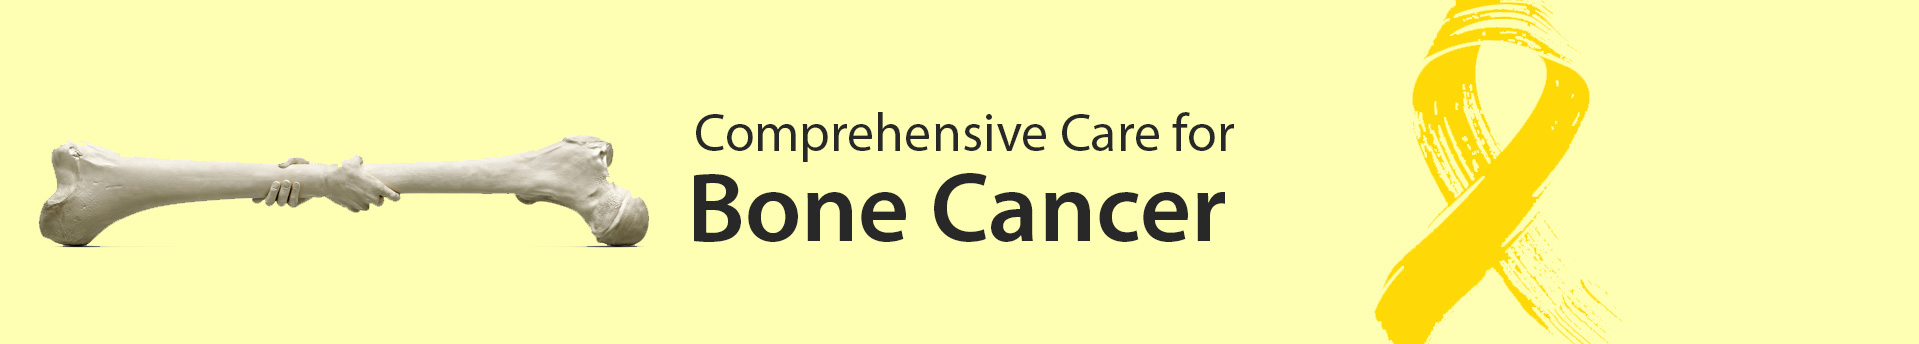 Medicaoncology bone Cancer